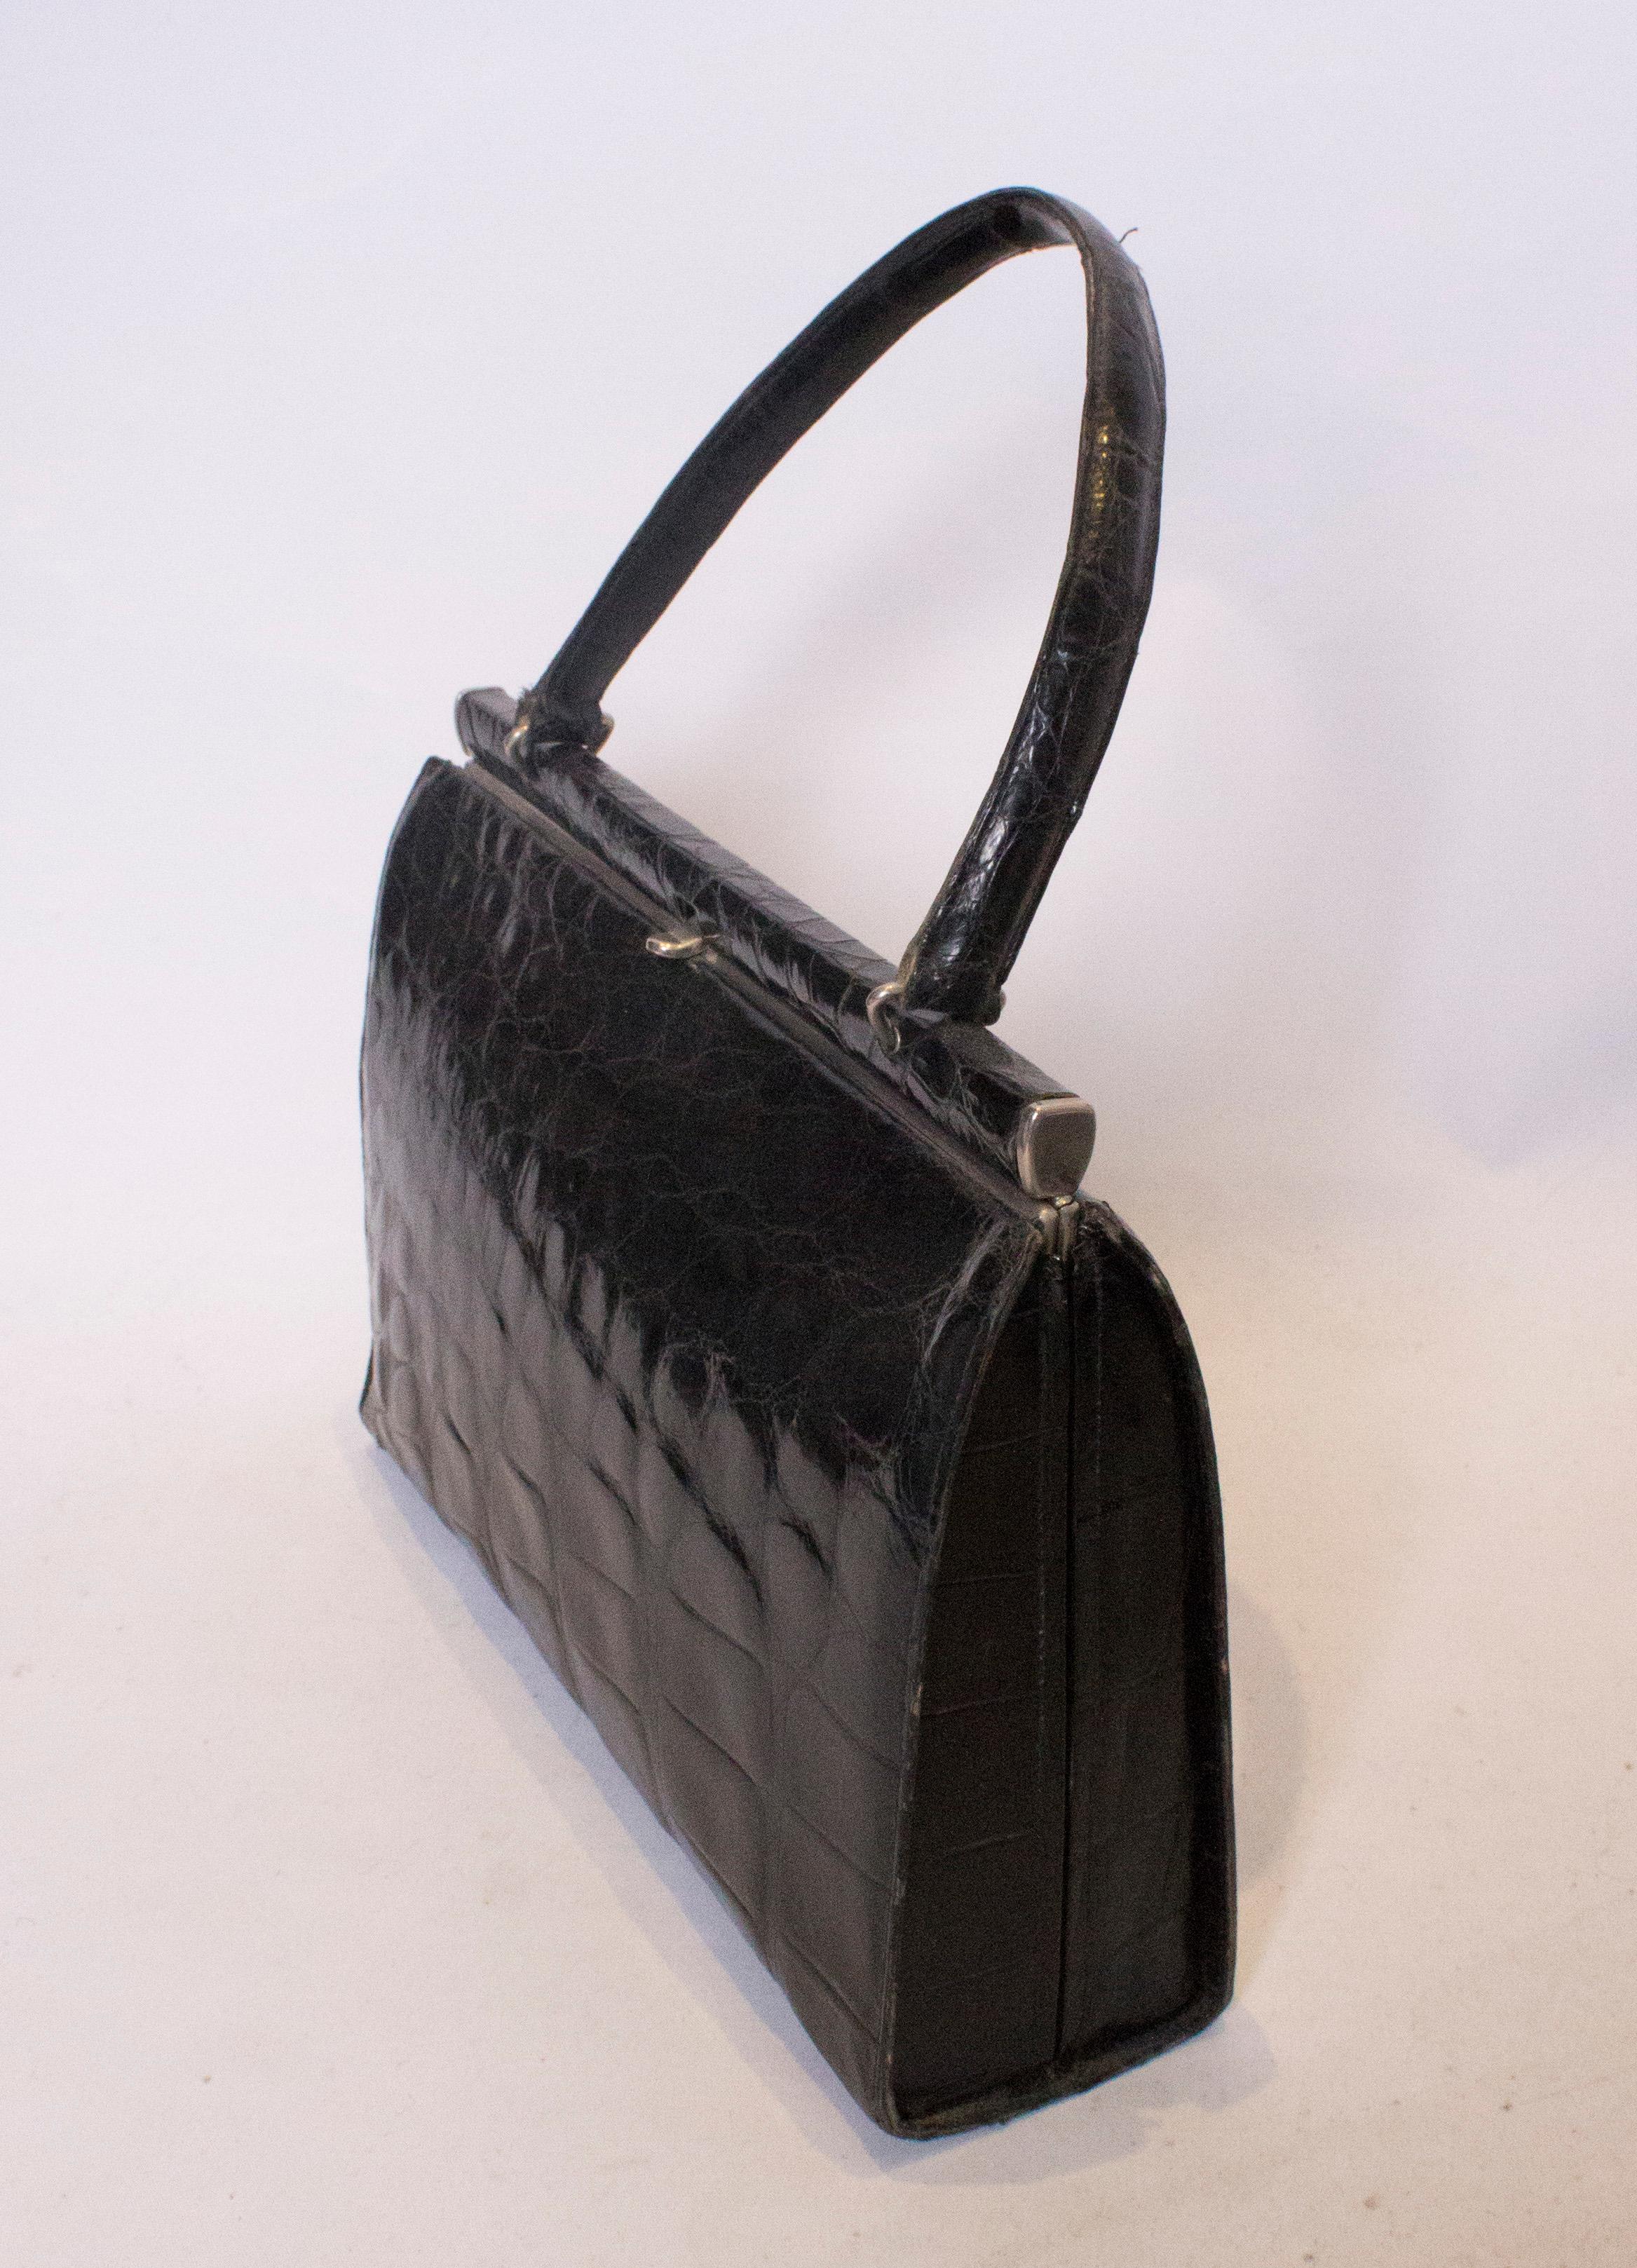 Un sac à main vintage chic en crocodile,  Le sac est doté d'une fermeture centrale sur le dessus et, à l'intérieur, d'une pochette et d'une pochette zippée.
Dimensions : largeur 12'', hauteur 8 1/2'', profondeur 3 1/4''.